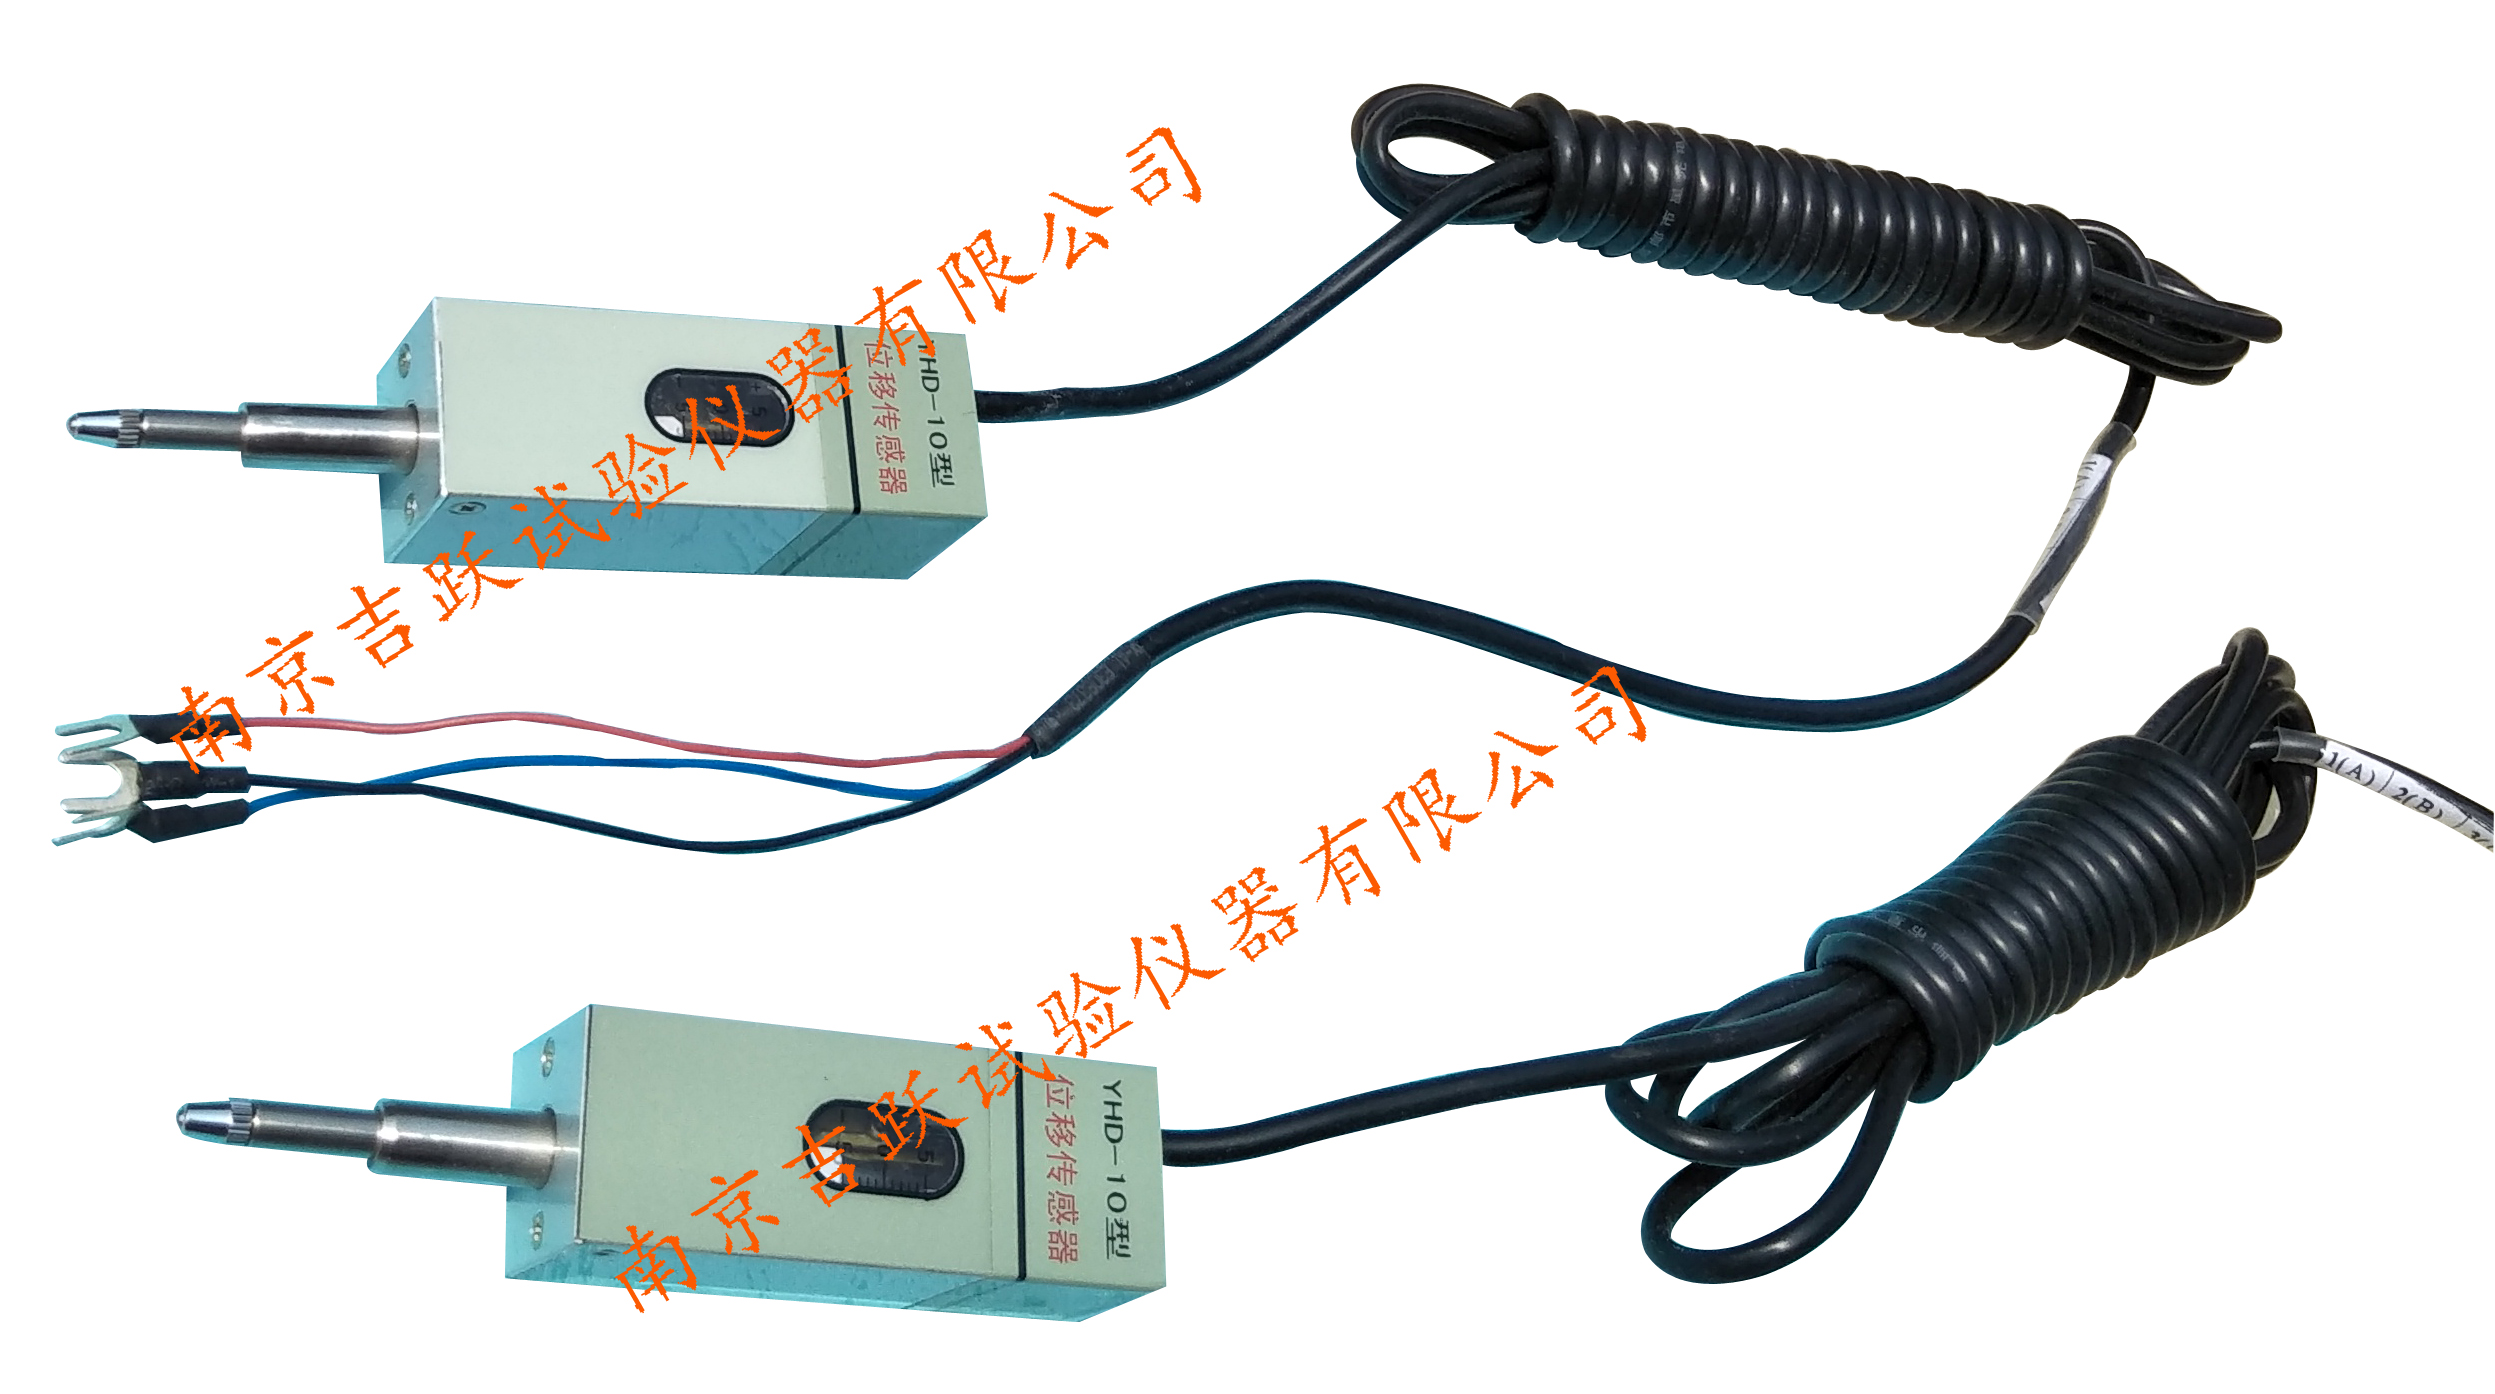 JYCX-5智能测斜仪沉降仪水位计生产厂家南京吉跃